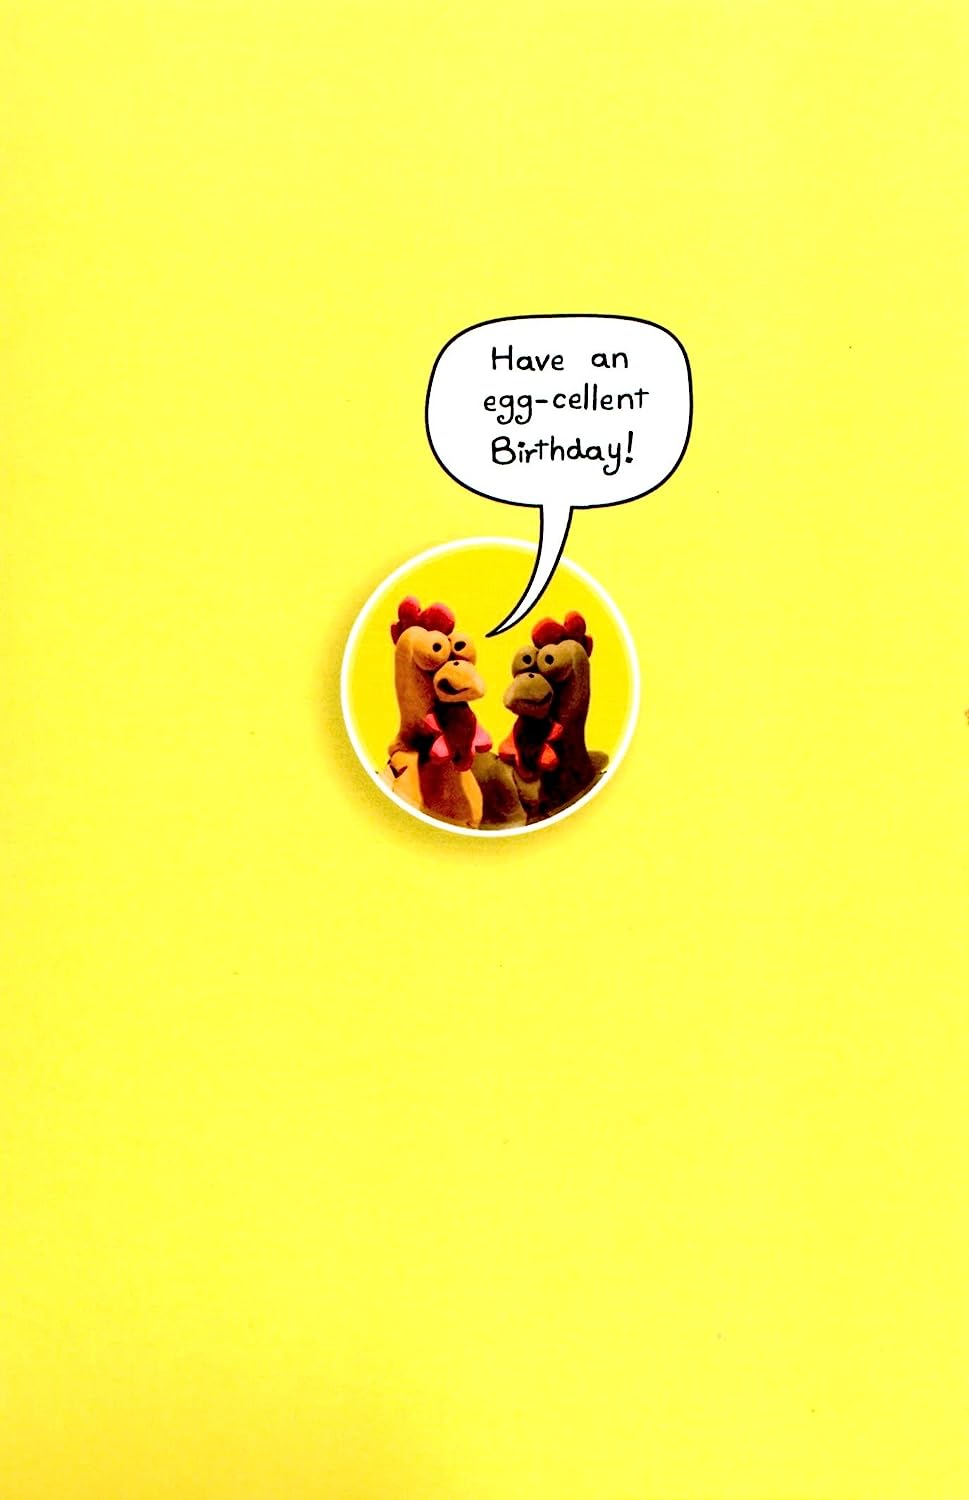 Hilarious Chicken Joke Birthday Card